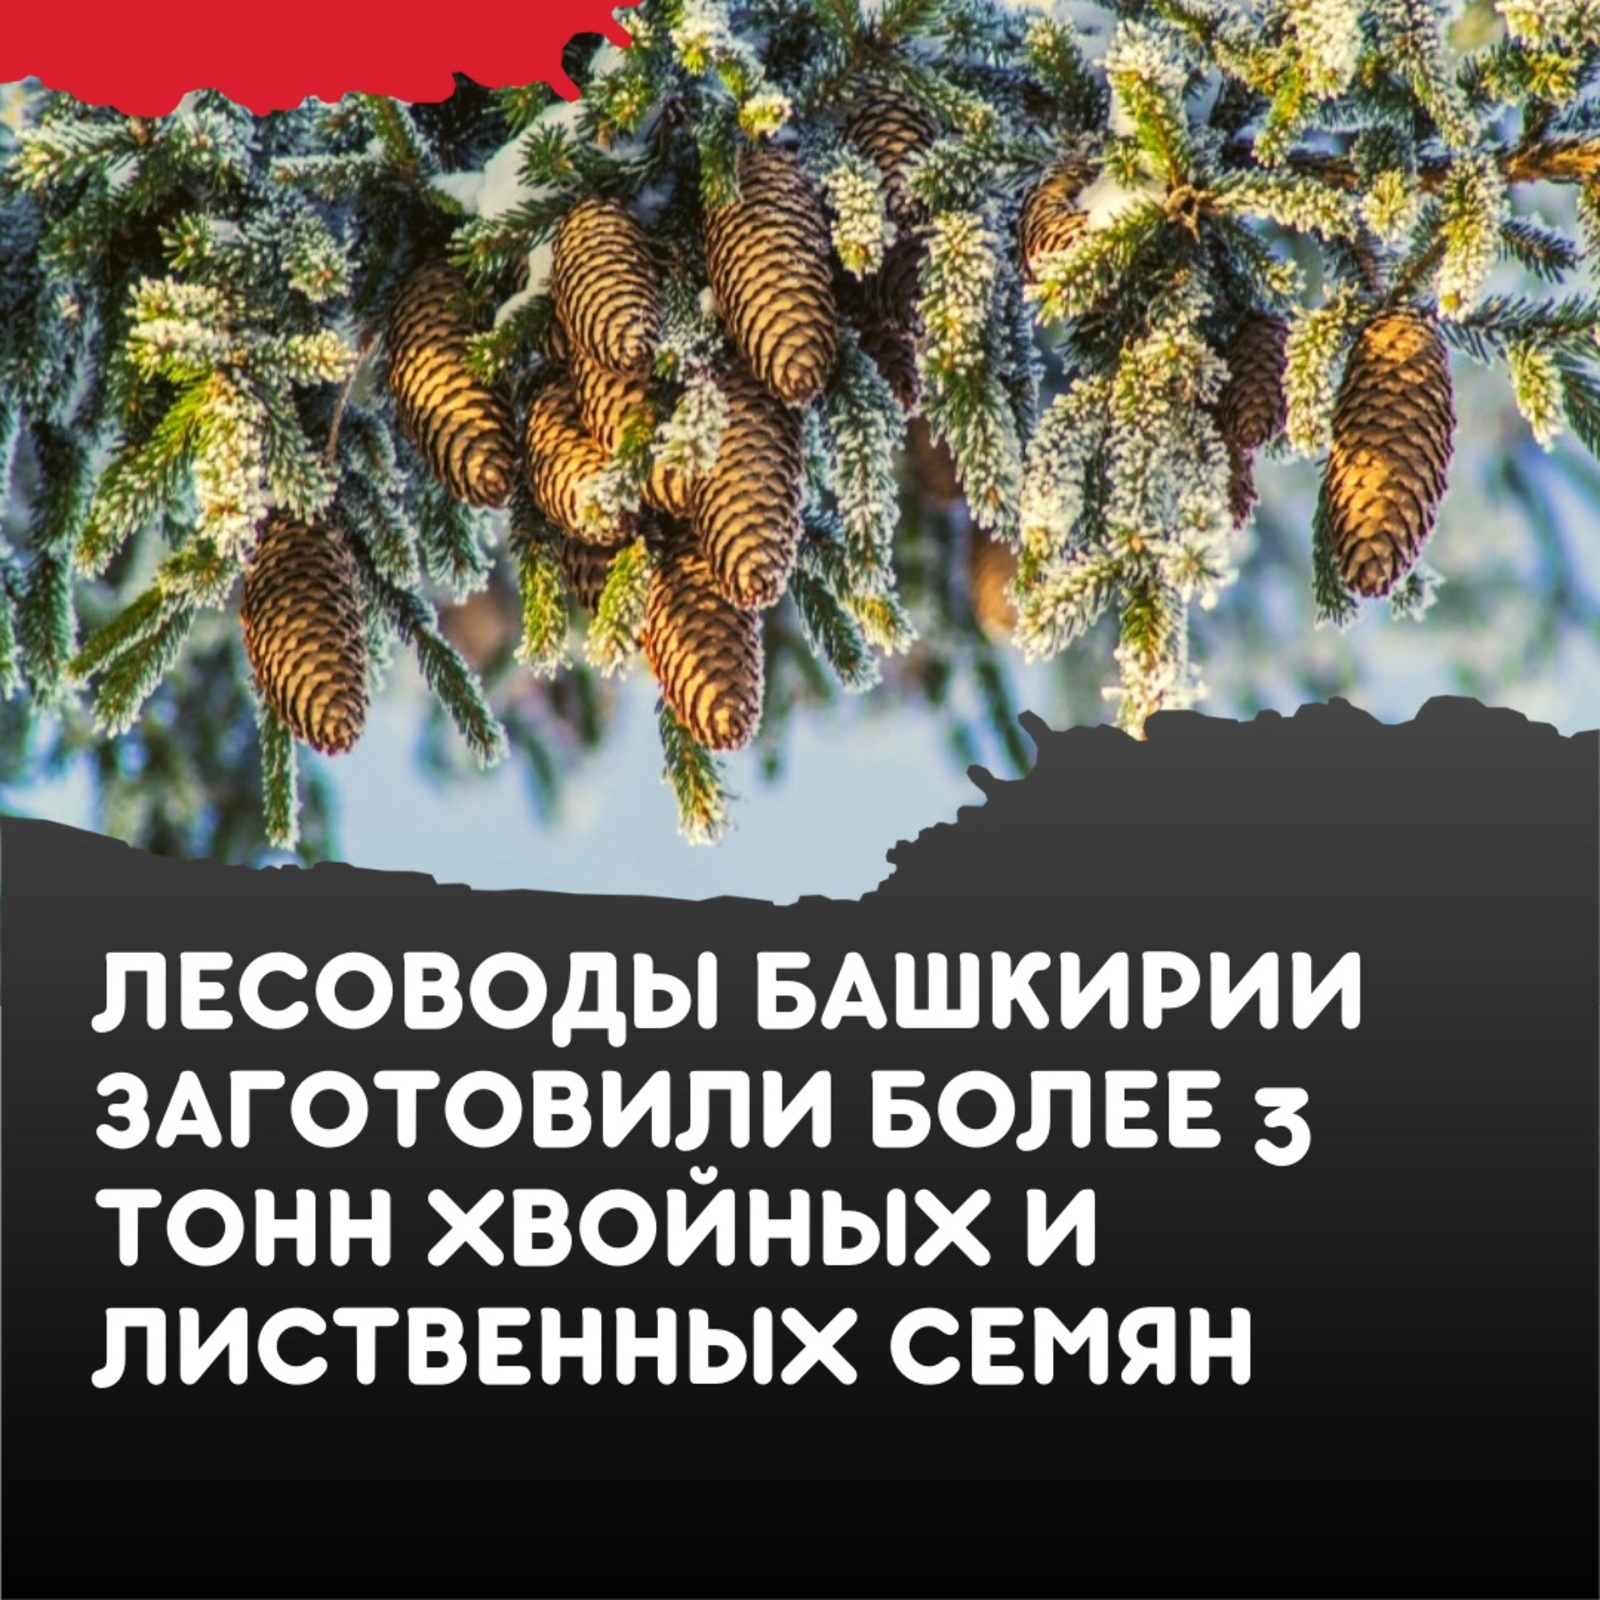 Лесные хозяйства Башкирии заготовили 3,2 тонны семян